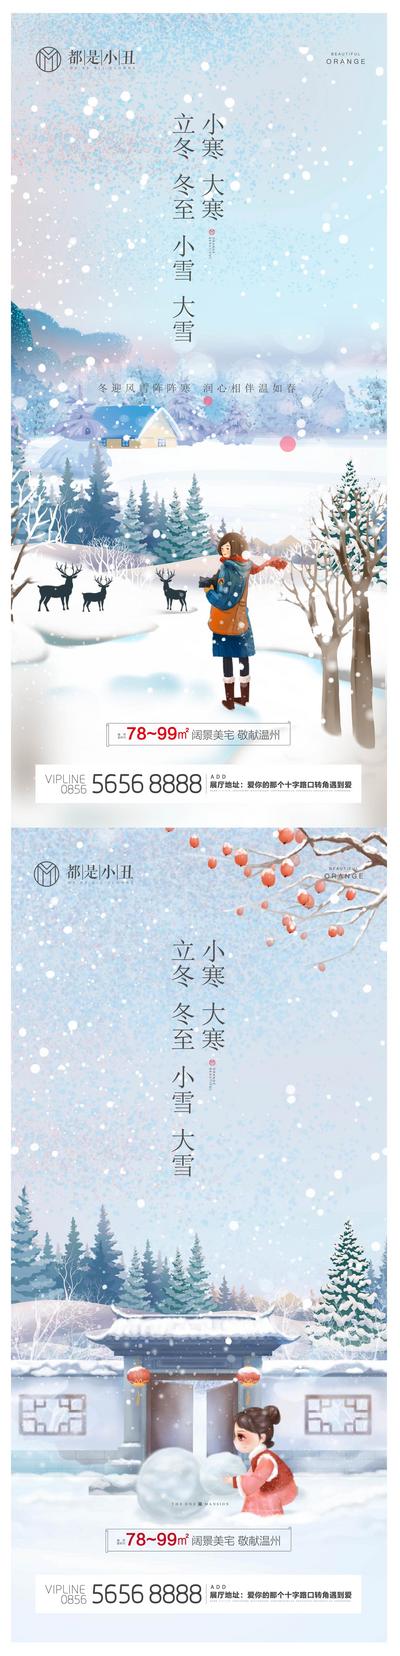 【南门网】海报 二十四节气 立冬 冬至 小雪 大雪 小寒 大寒 雪景 插画